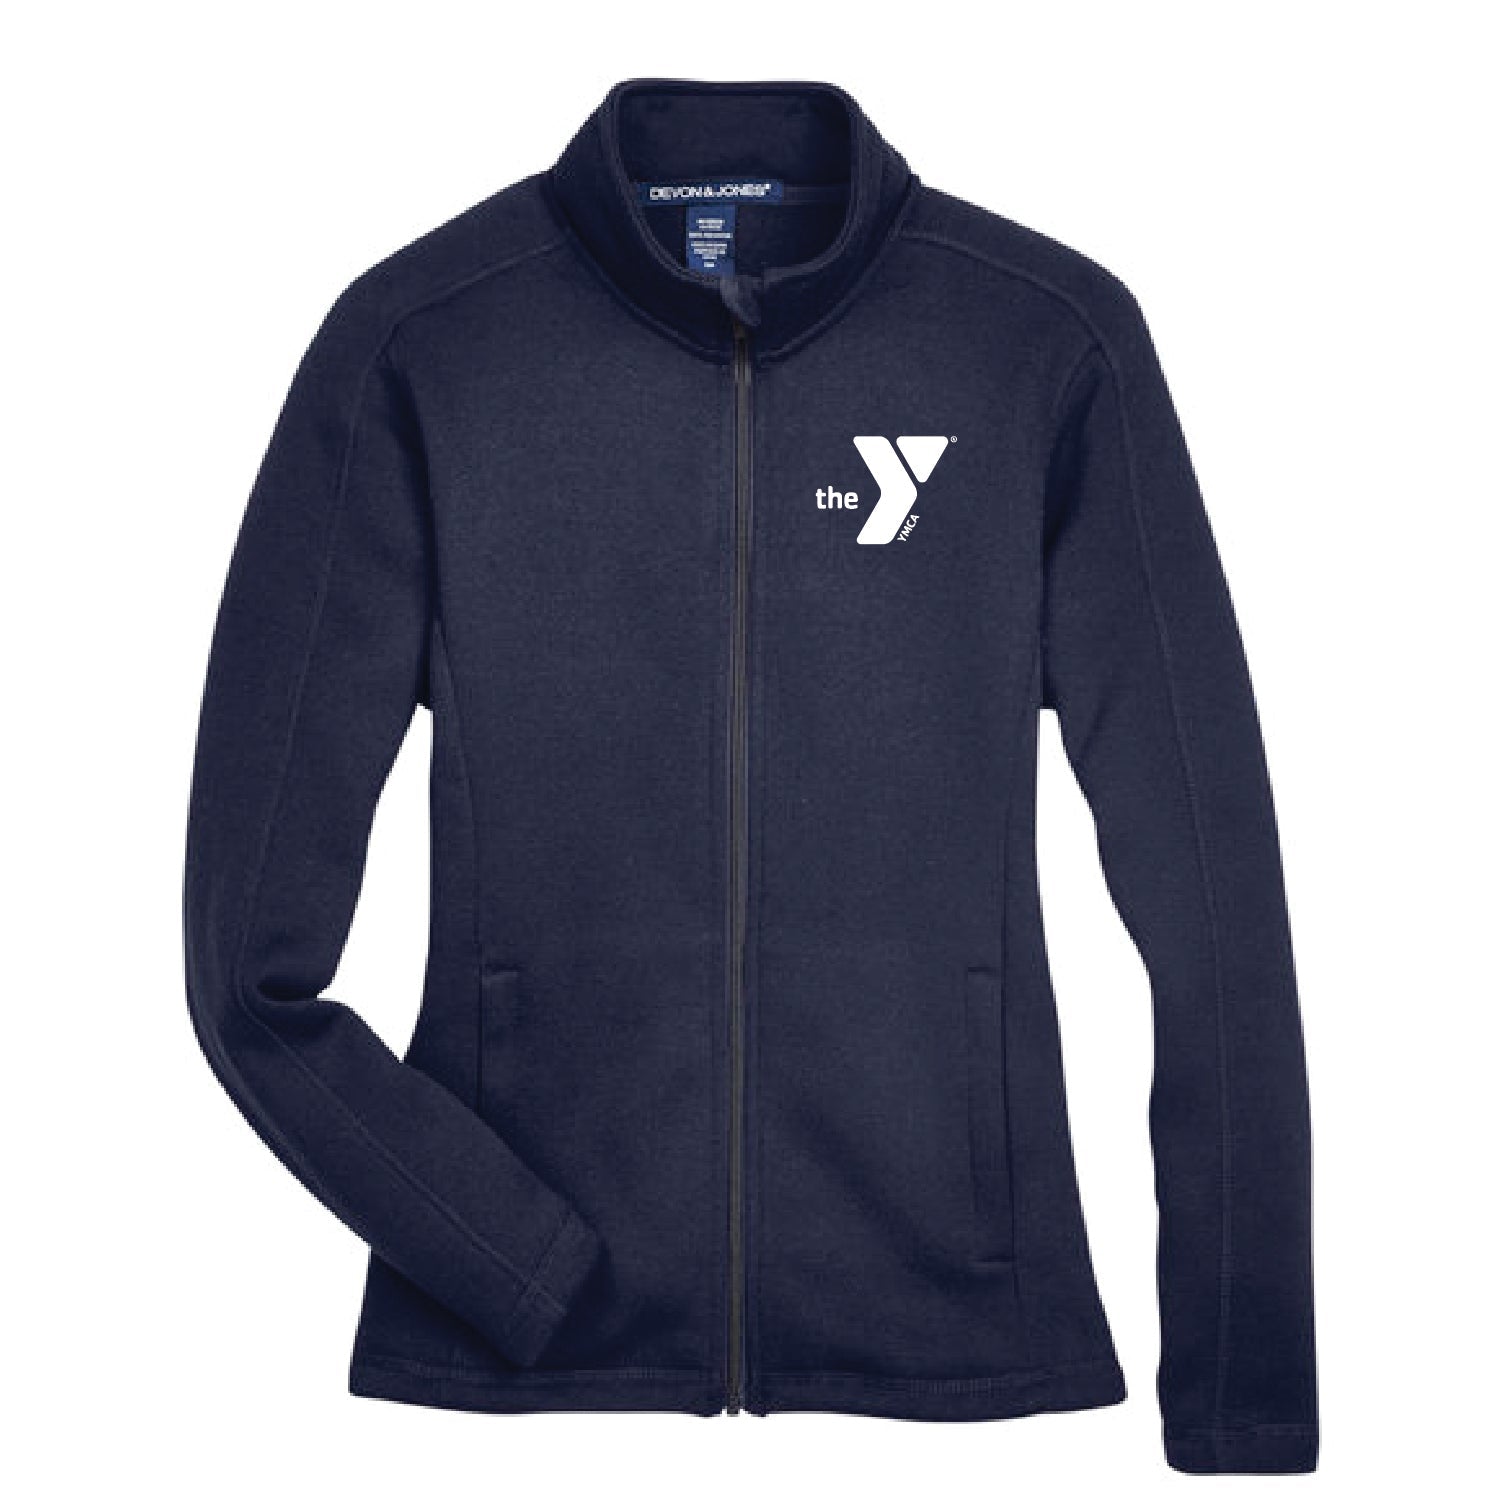 YMCA Devon & Jones Ladies' Bristol Full-Zip Sweater Fleece Jacket - DSP On Demand